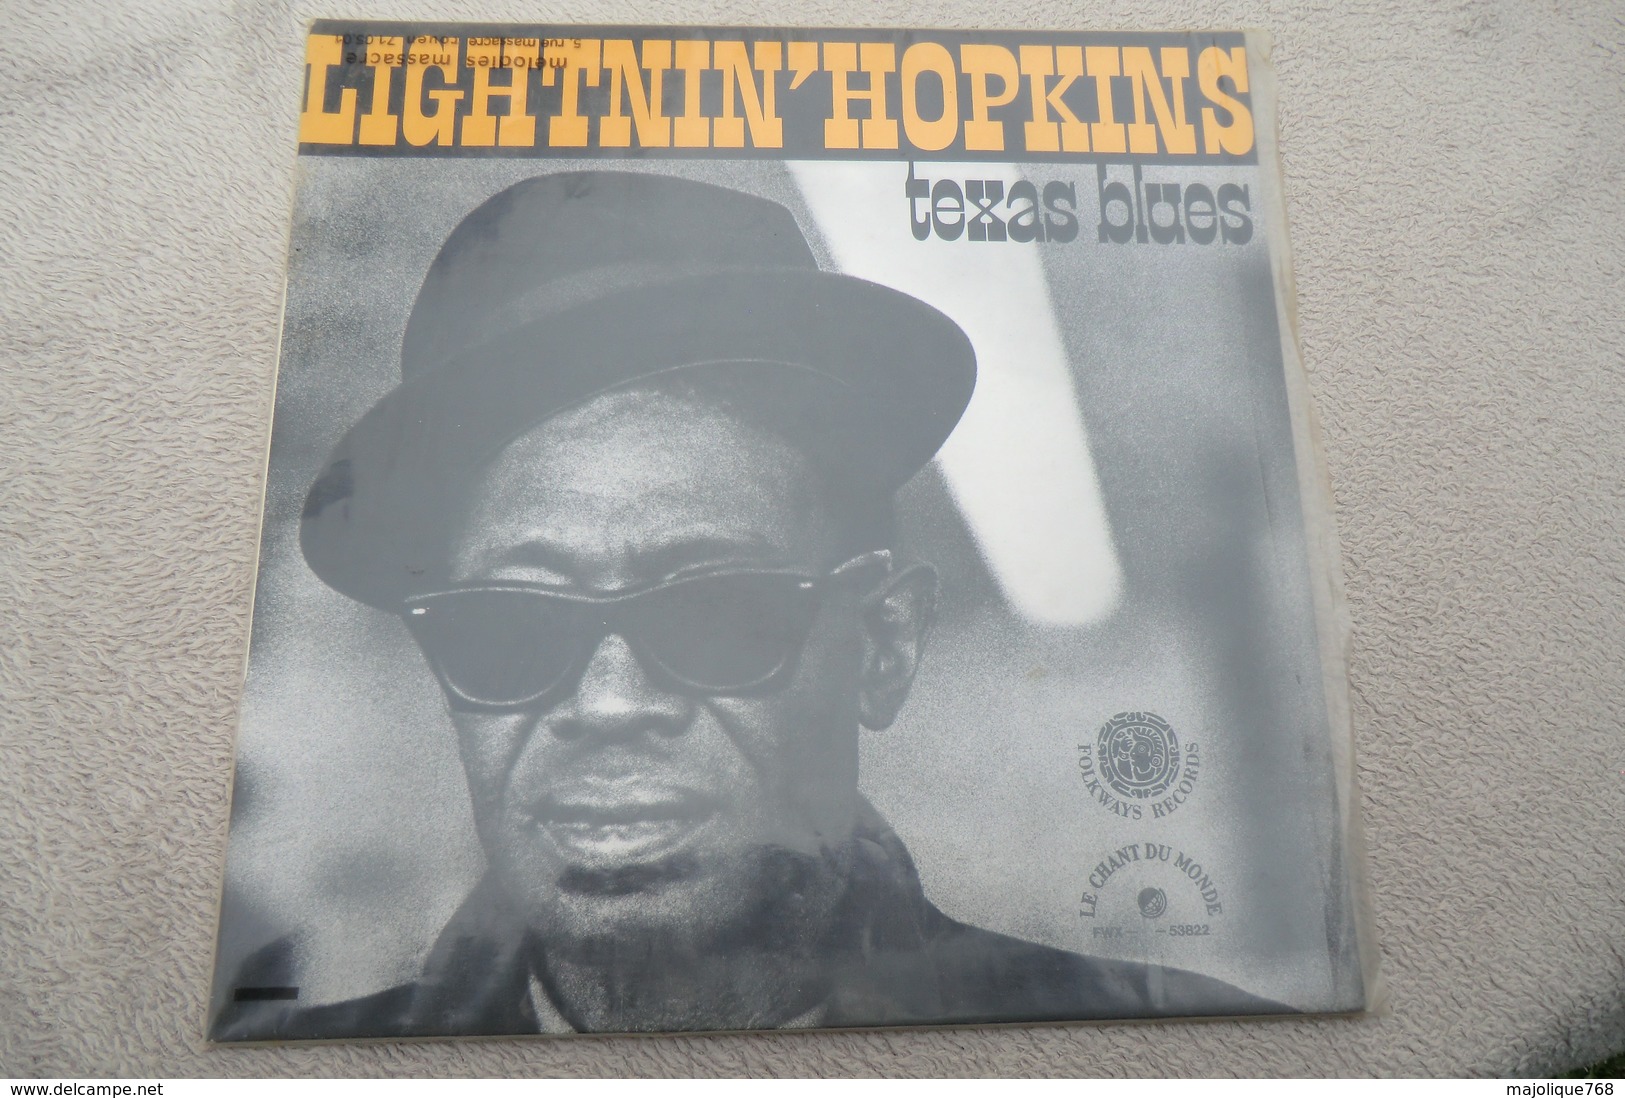 Lightnin' Hopkins - Texas Blues - Le Chant Du Monde ‎– FWX 53822, Folkways Records ‎– FWX 53822 - 1981 - Blues